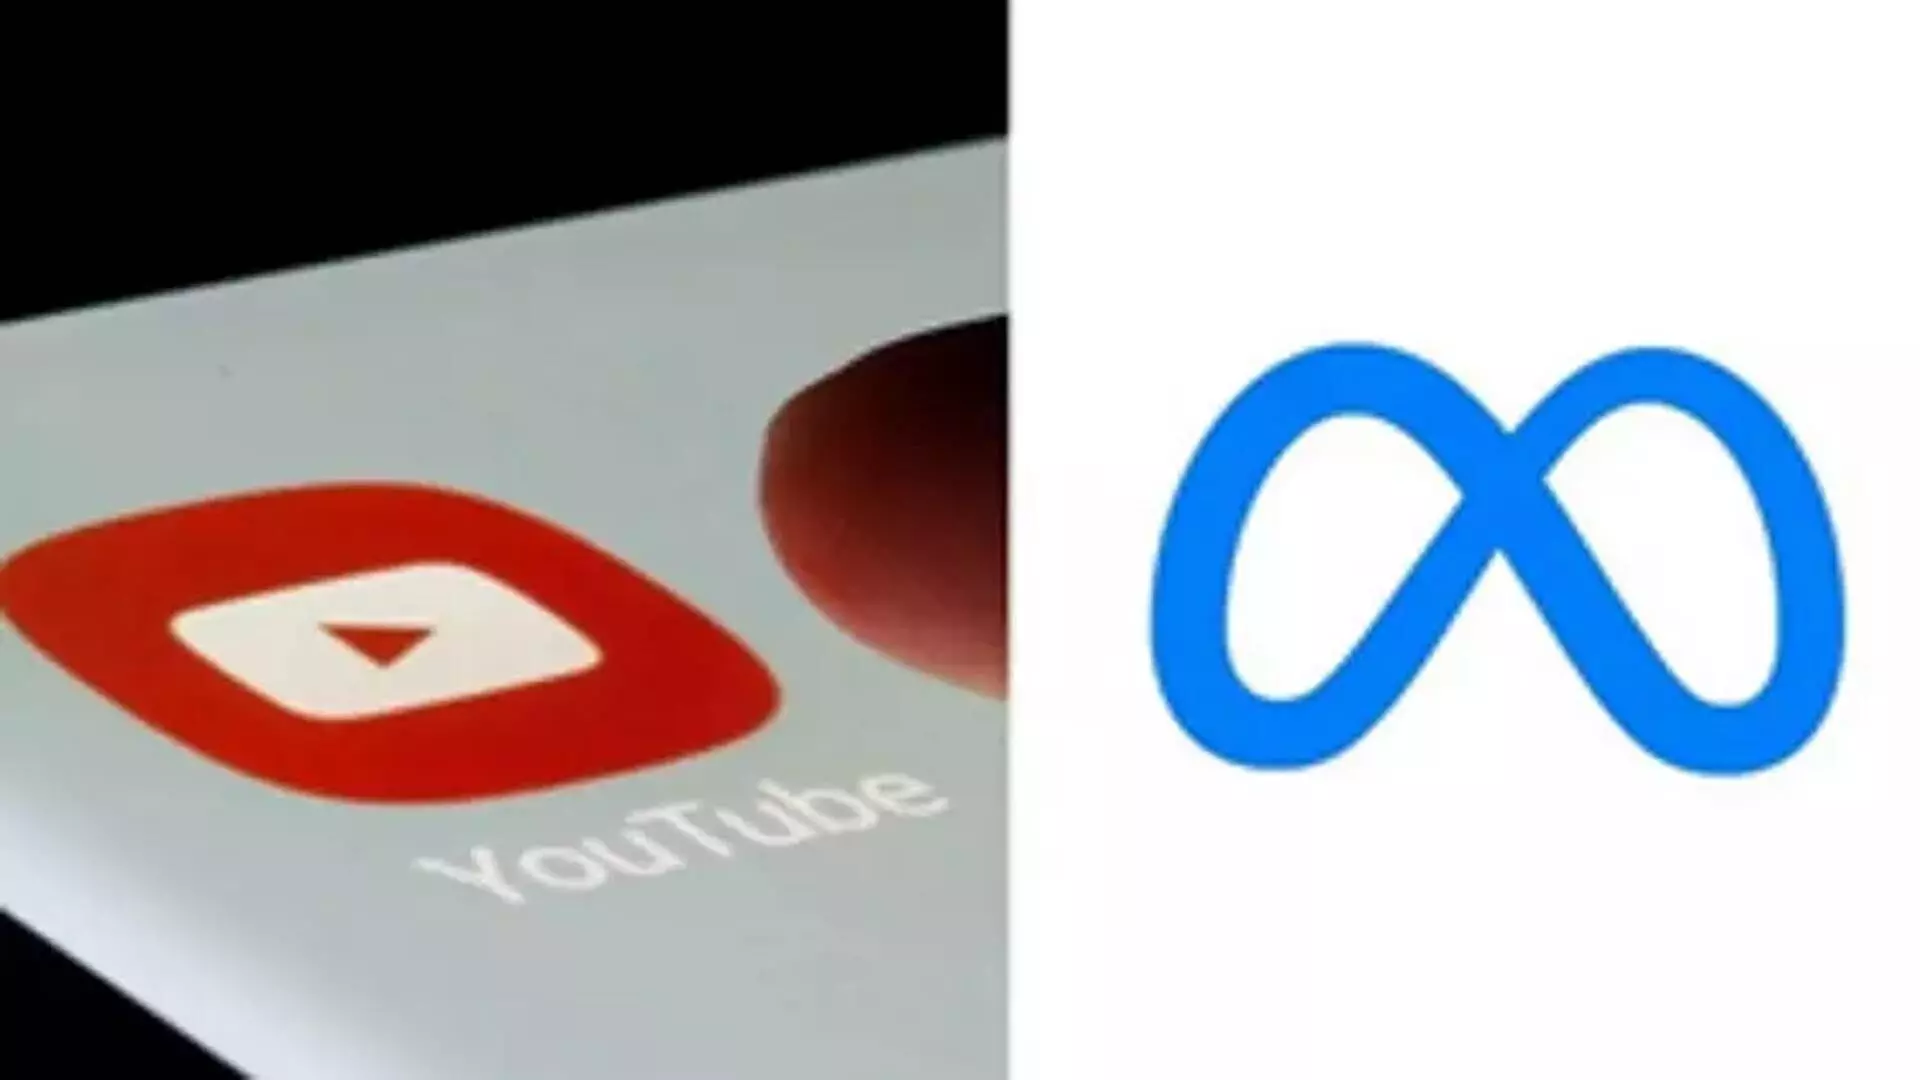 यूट्यूब, मेटा को ऑनलाइन फ़िशिंग घोटालों के ख़िलाफ़ कार्रवाई करनी चाहिए